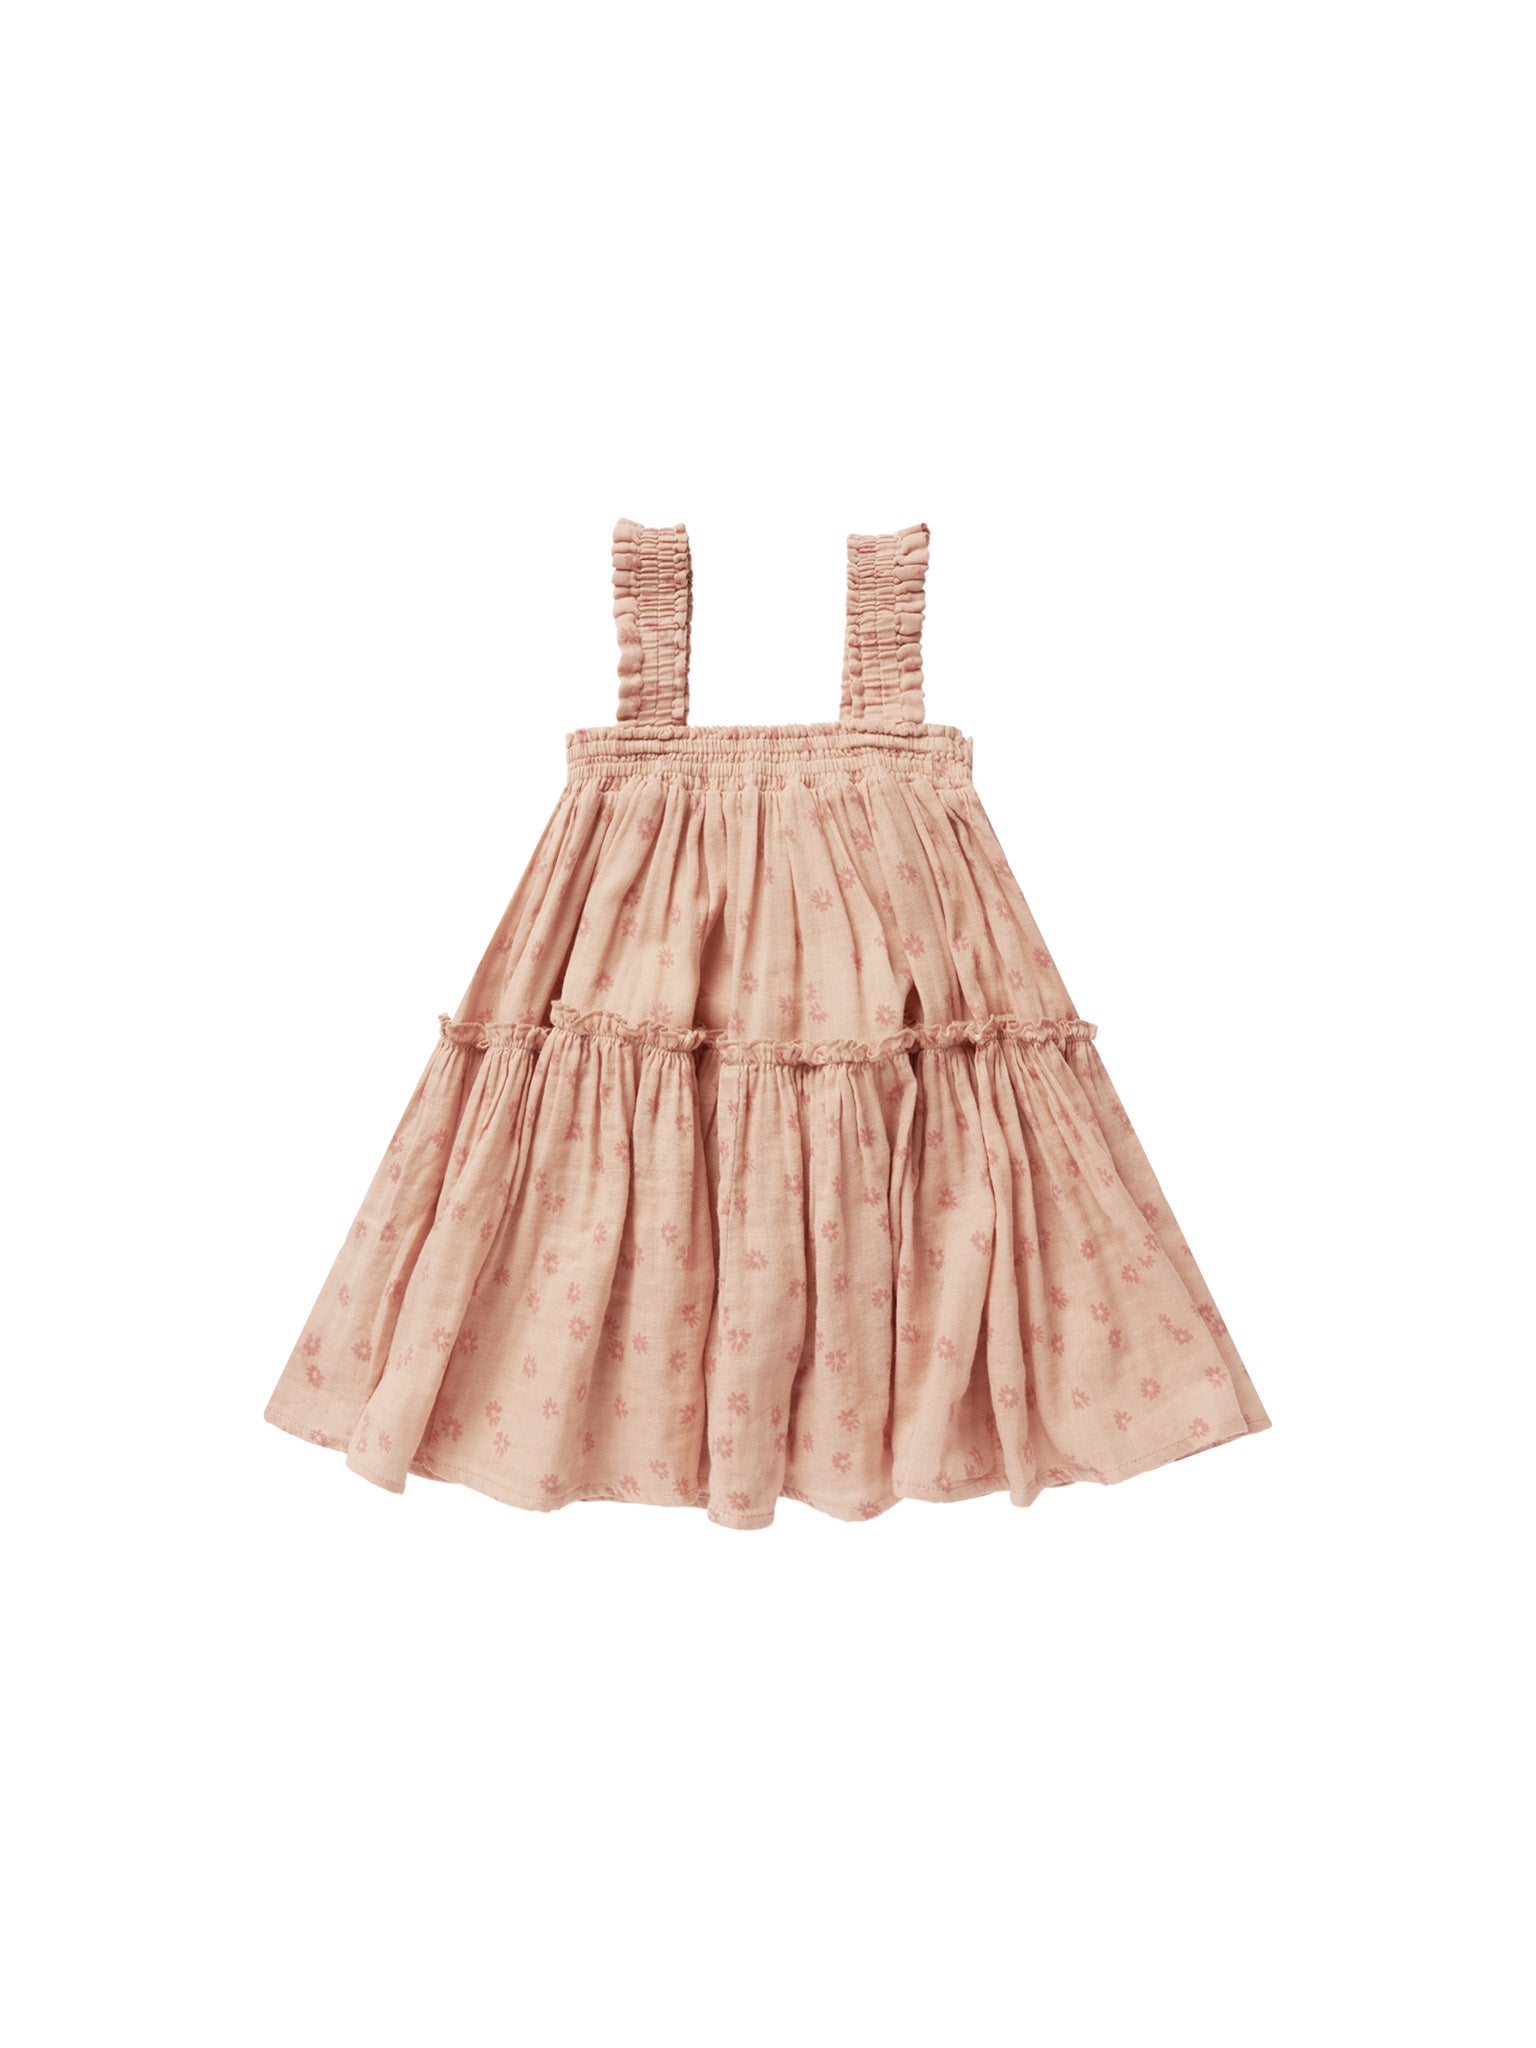 cicily dress || pink daisy